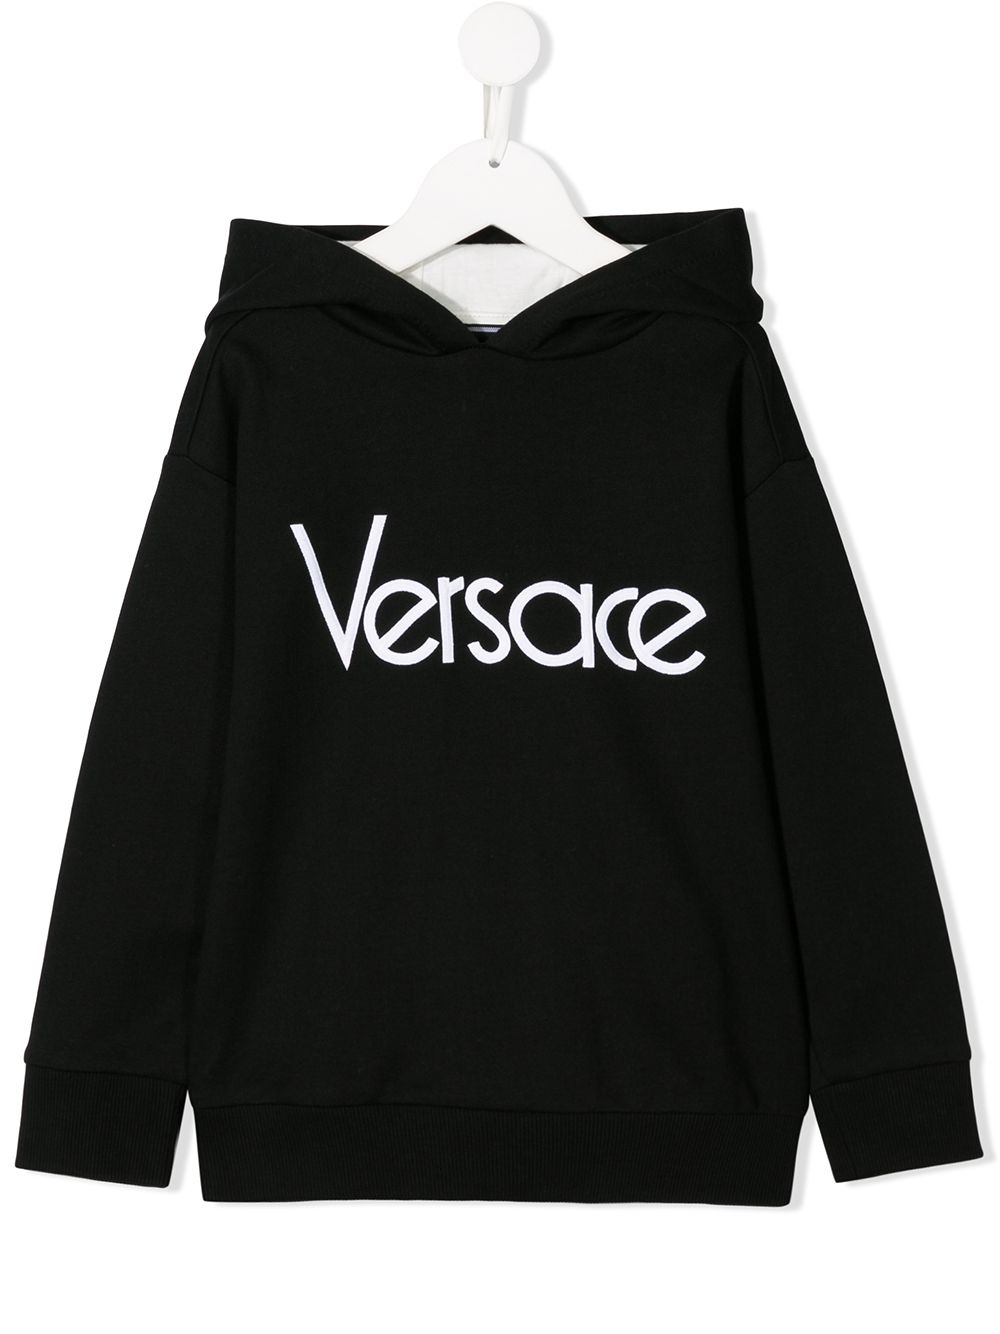 фото Young versace худи свободного кроя с логотипом